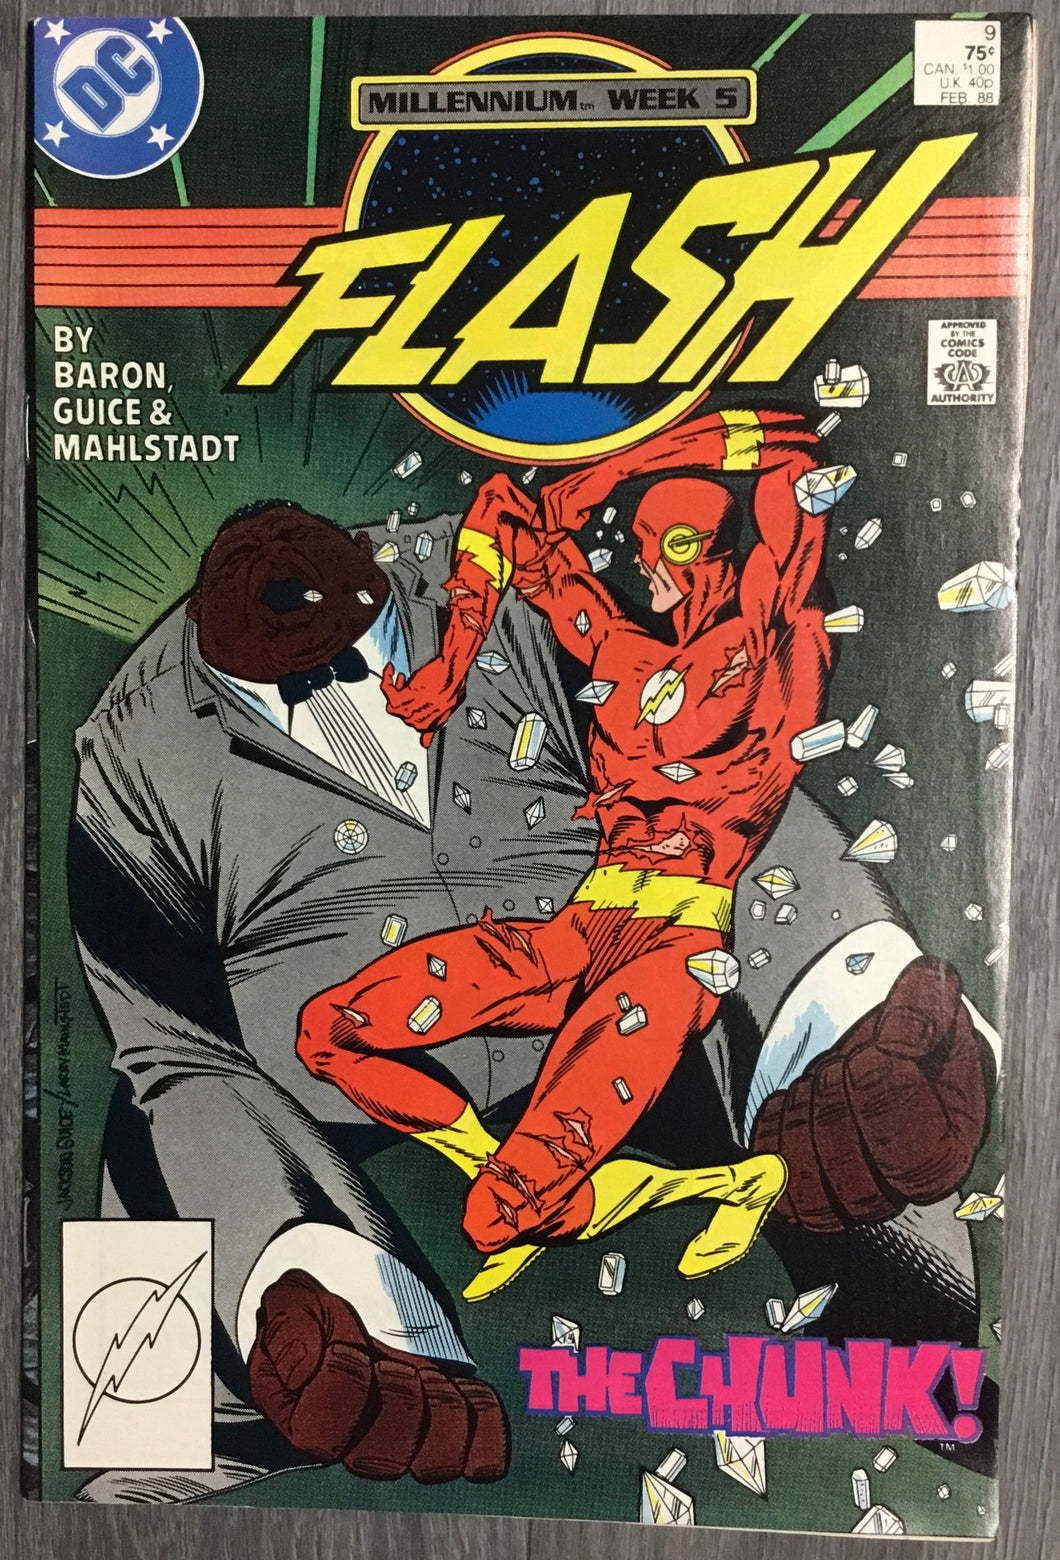 The Flash No. #9 1988 DC Comics